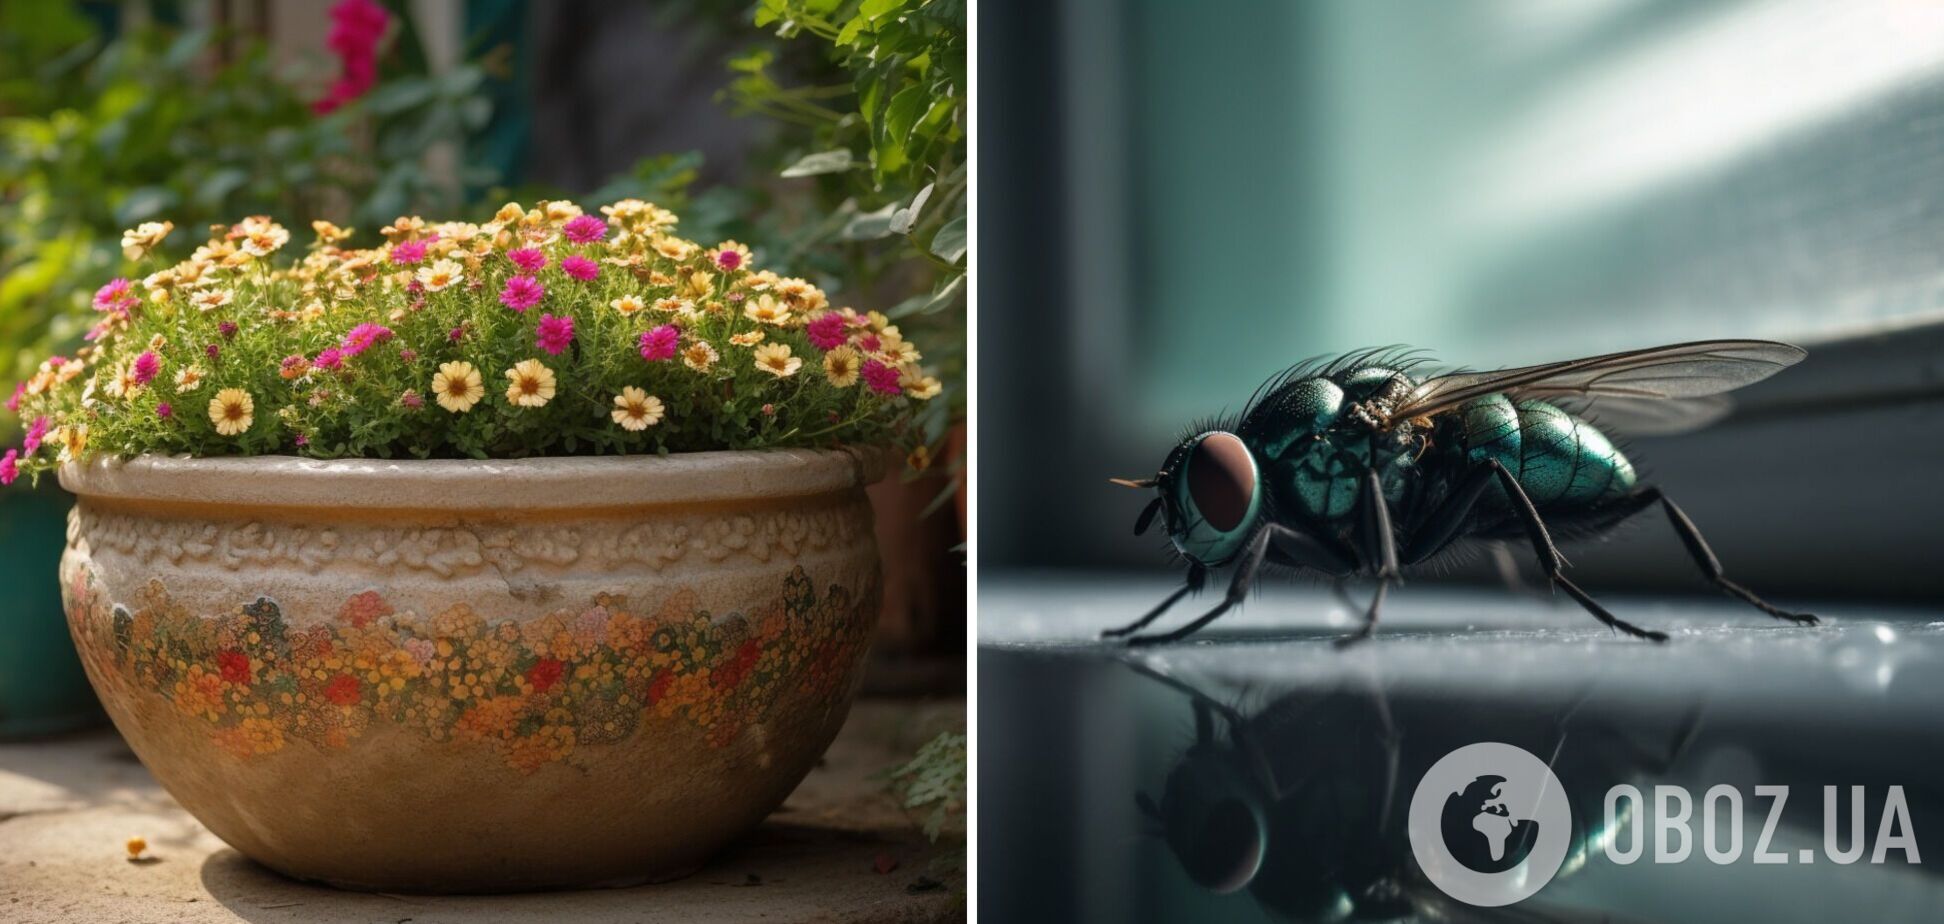 Как легко избавиться от мух в жилище: запахи, которые отпугивают насекомых